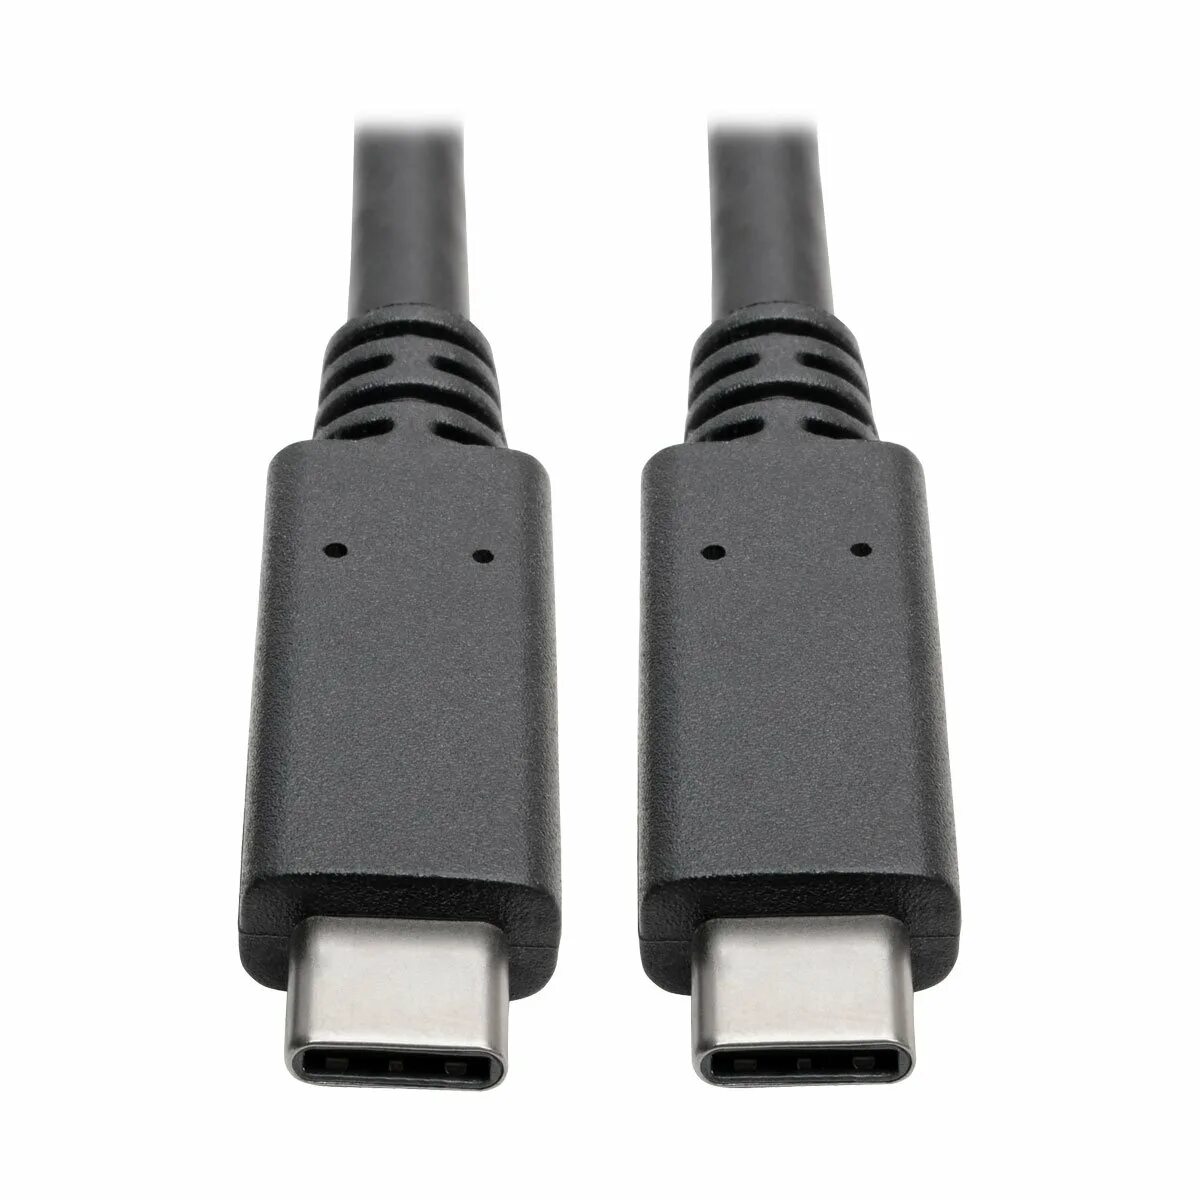 Usb c 5a. USB 3.2 gen2x2 Type-c. USB 3.2 Gen 1 Type a кабель. USB C 3.2 gen2x2. Кабель USB Type-c 5a.